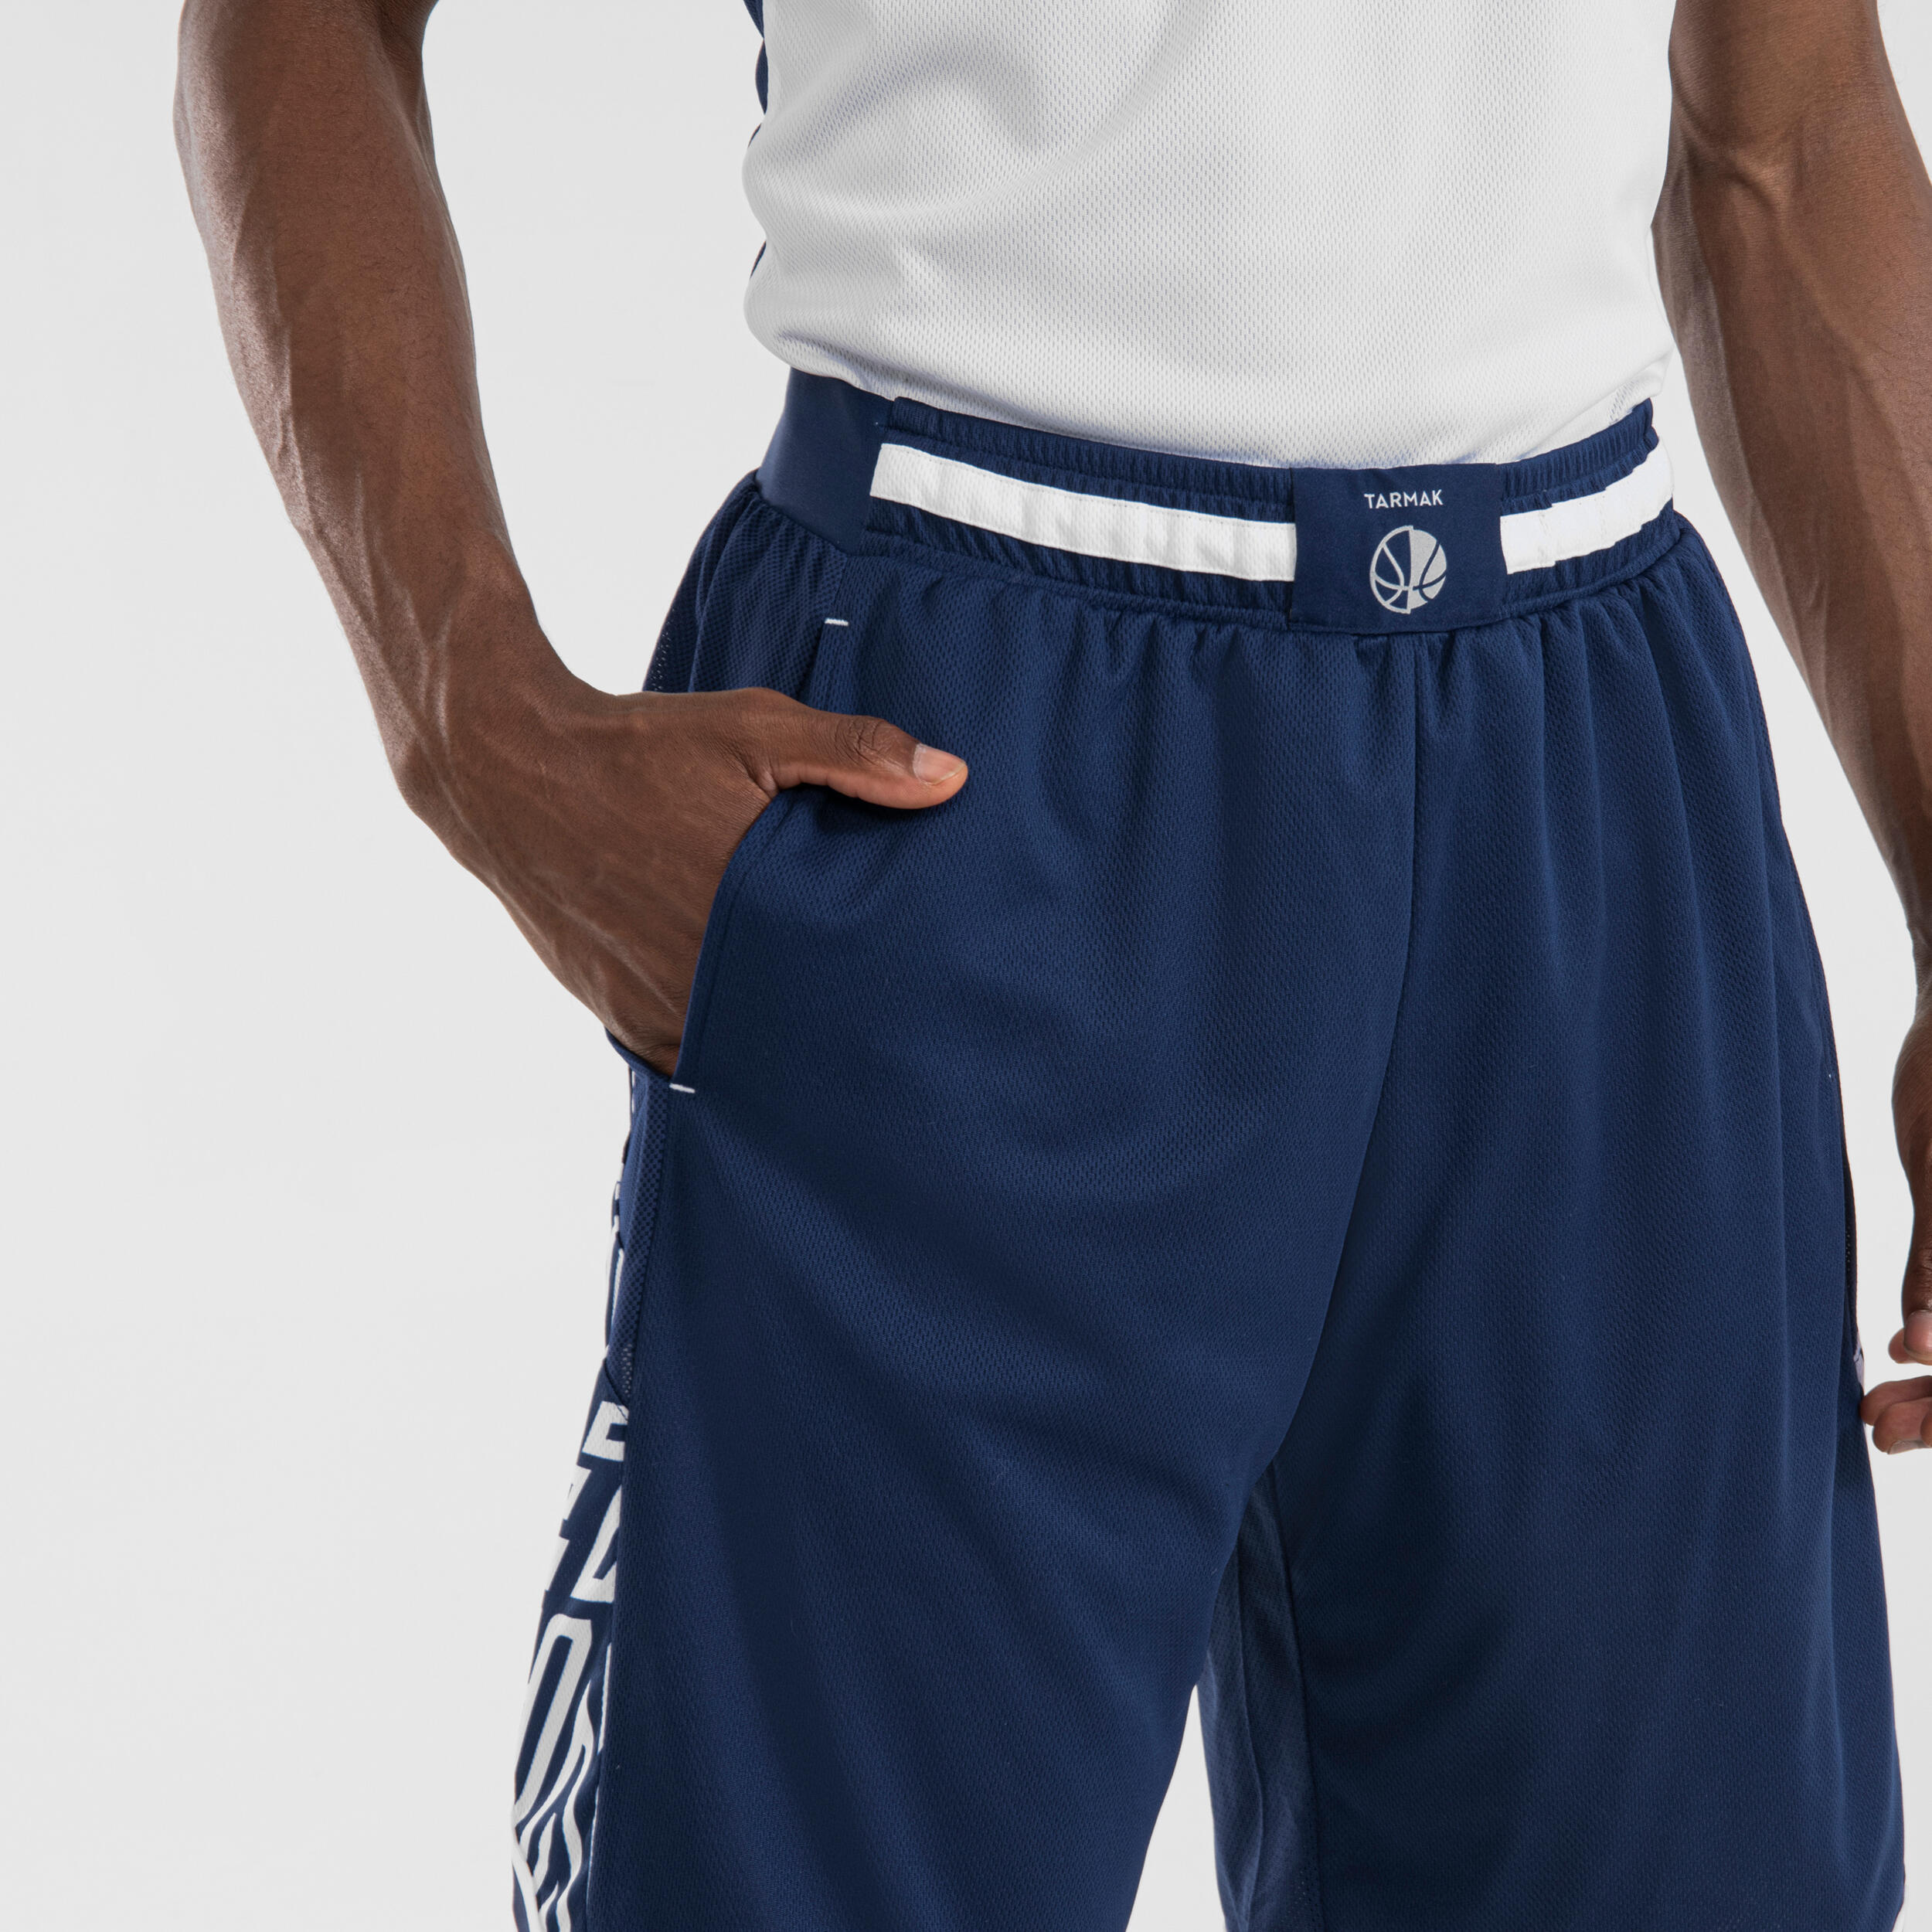 Men's/Women's Reversible Basketball Shorts SH500R - White/Navy 4/6